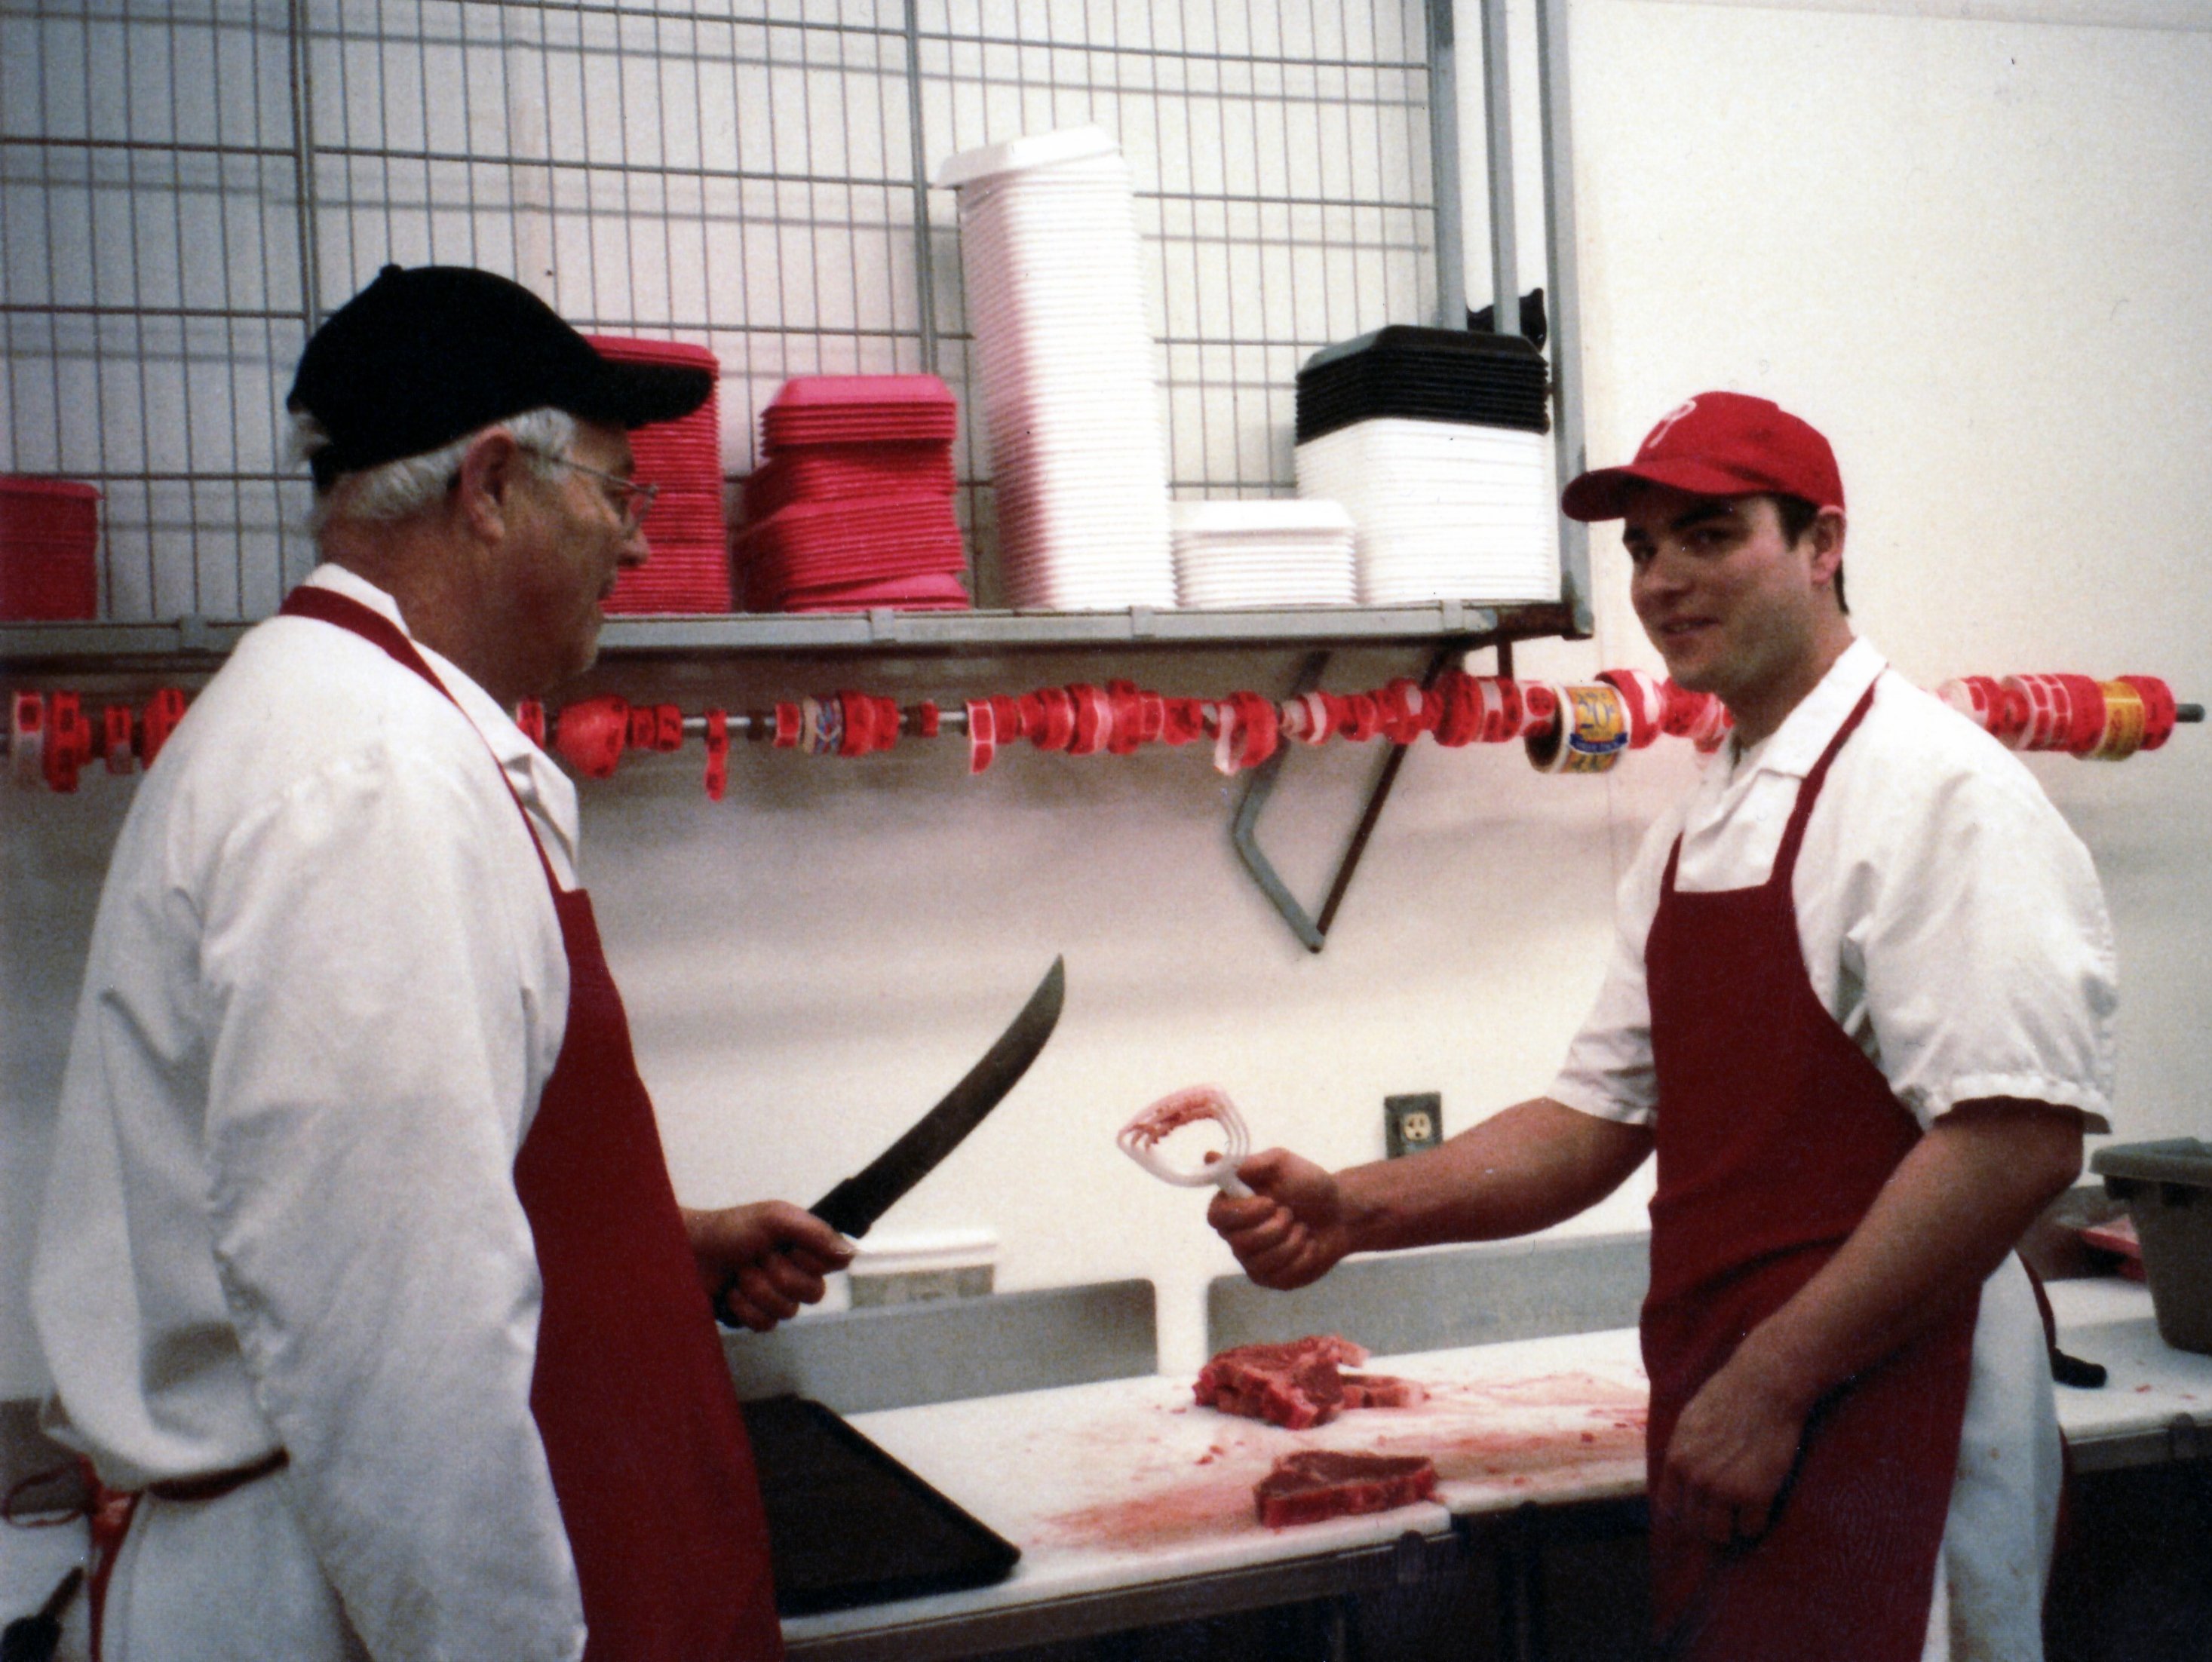 Ptacek IGA meat counter, Mike Ptacek and son Ralph Ptacek